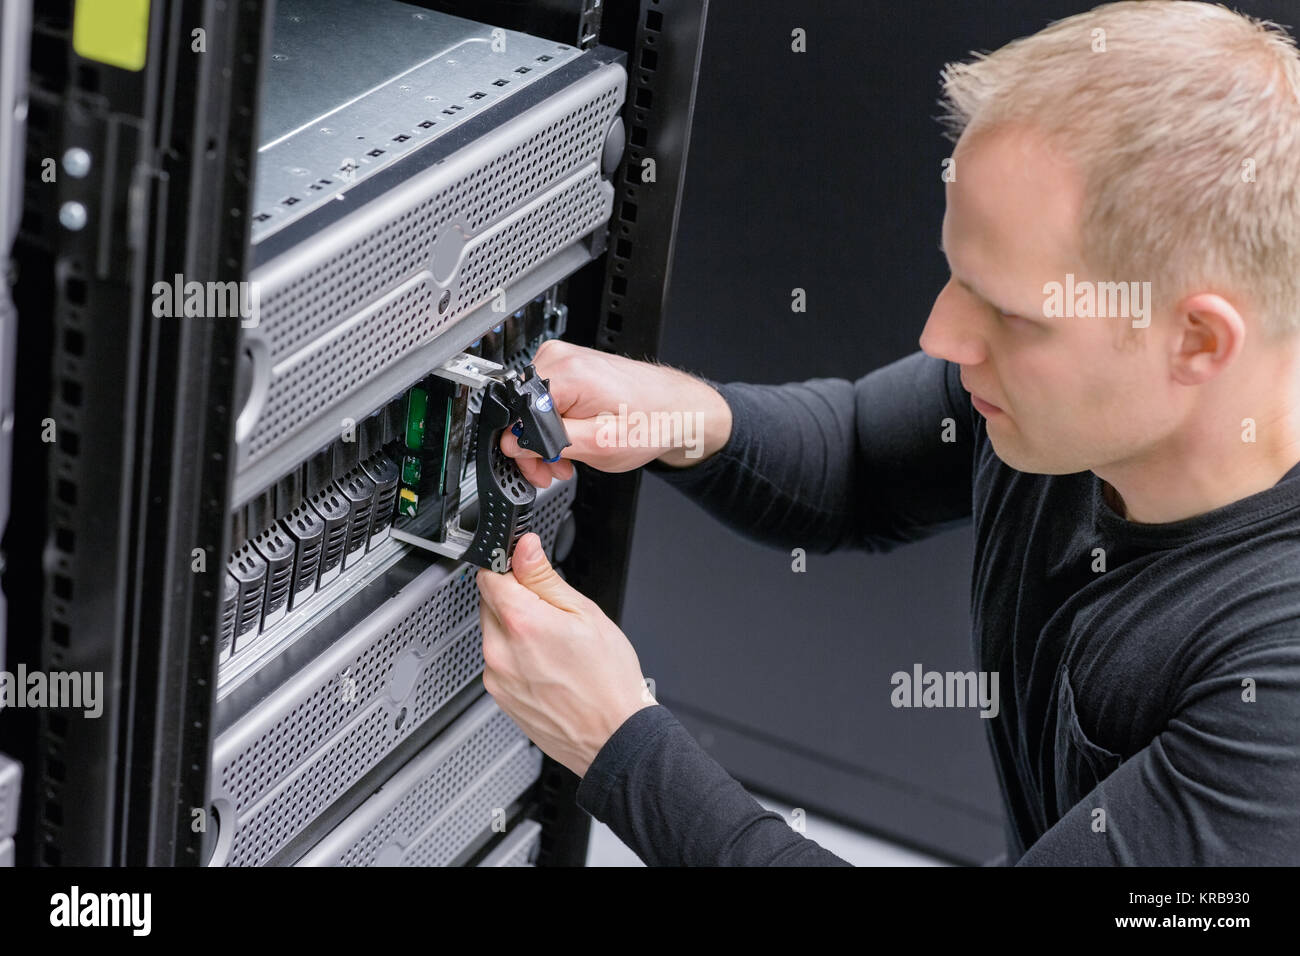 Consultor de TI Insertar disco duro SAN Foto de stock